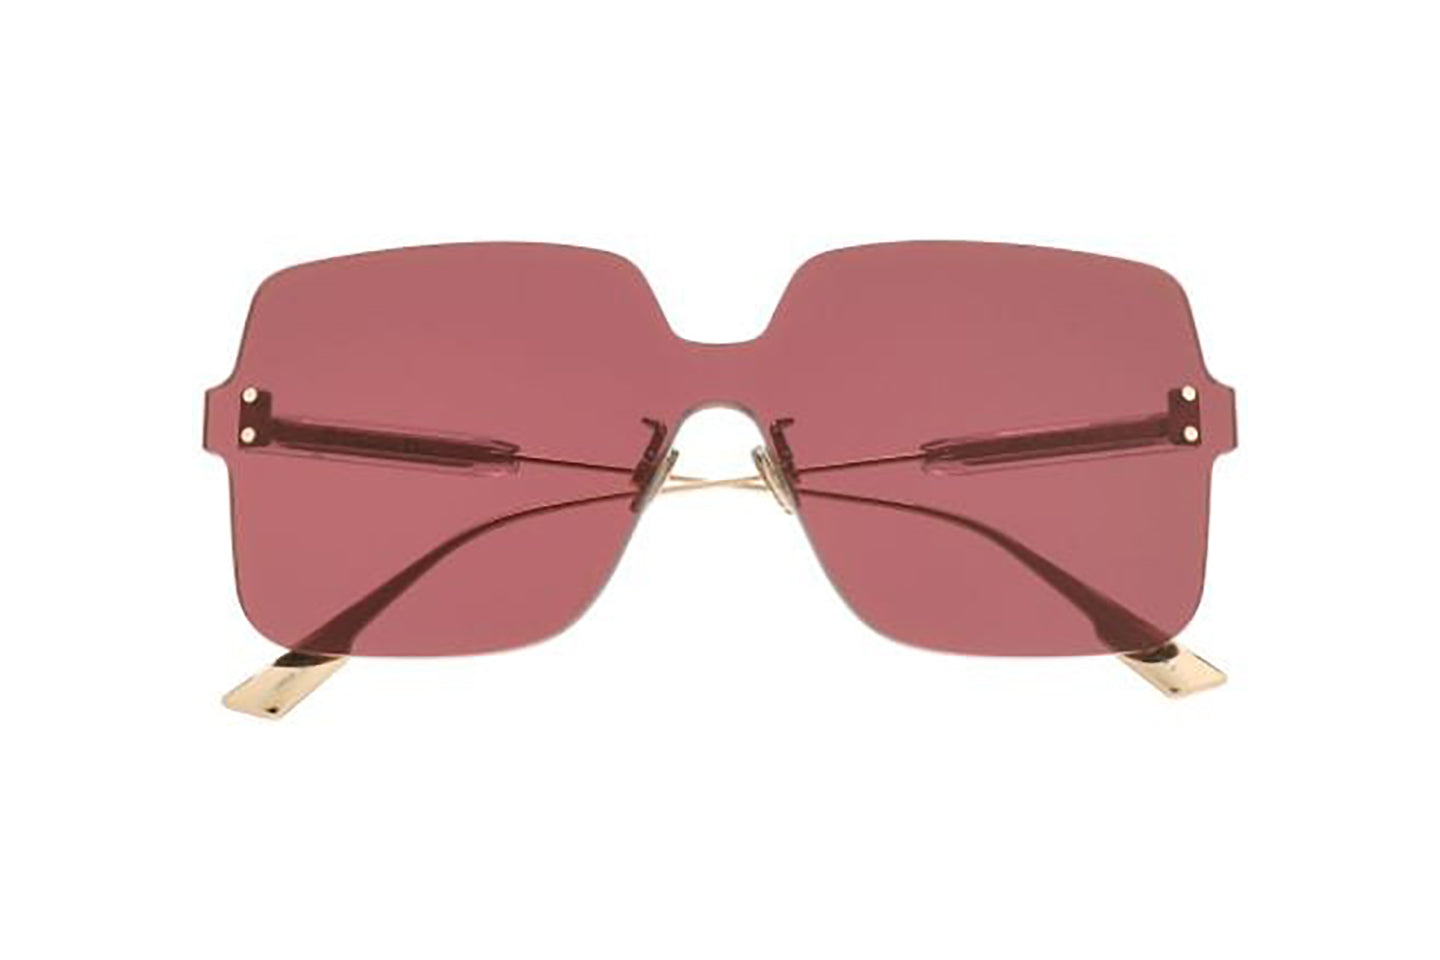 Mua Kính Mát Dior Eyewear CD Oval Sunglasses Màu Đen  Dior  Mua tại Vua  Hàng Hiệu h024682